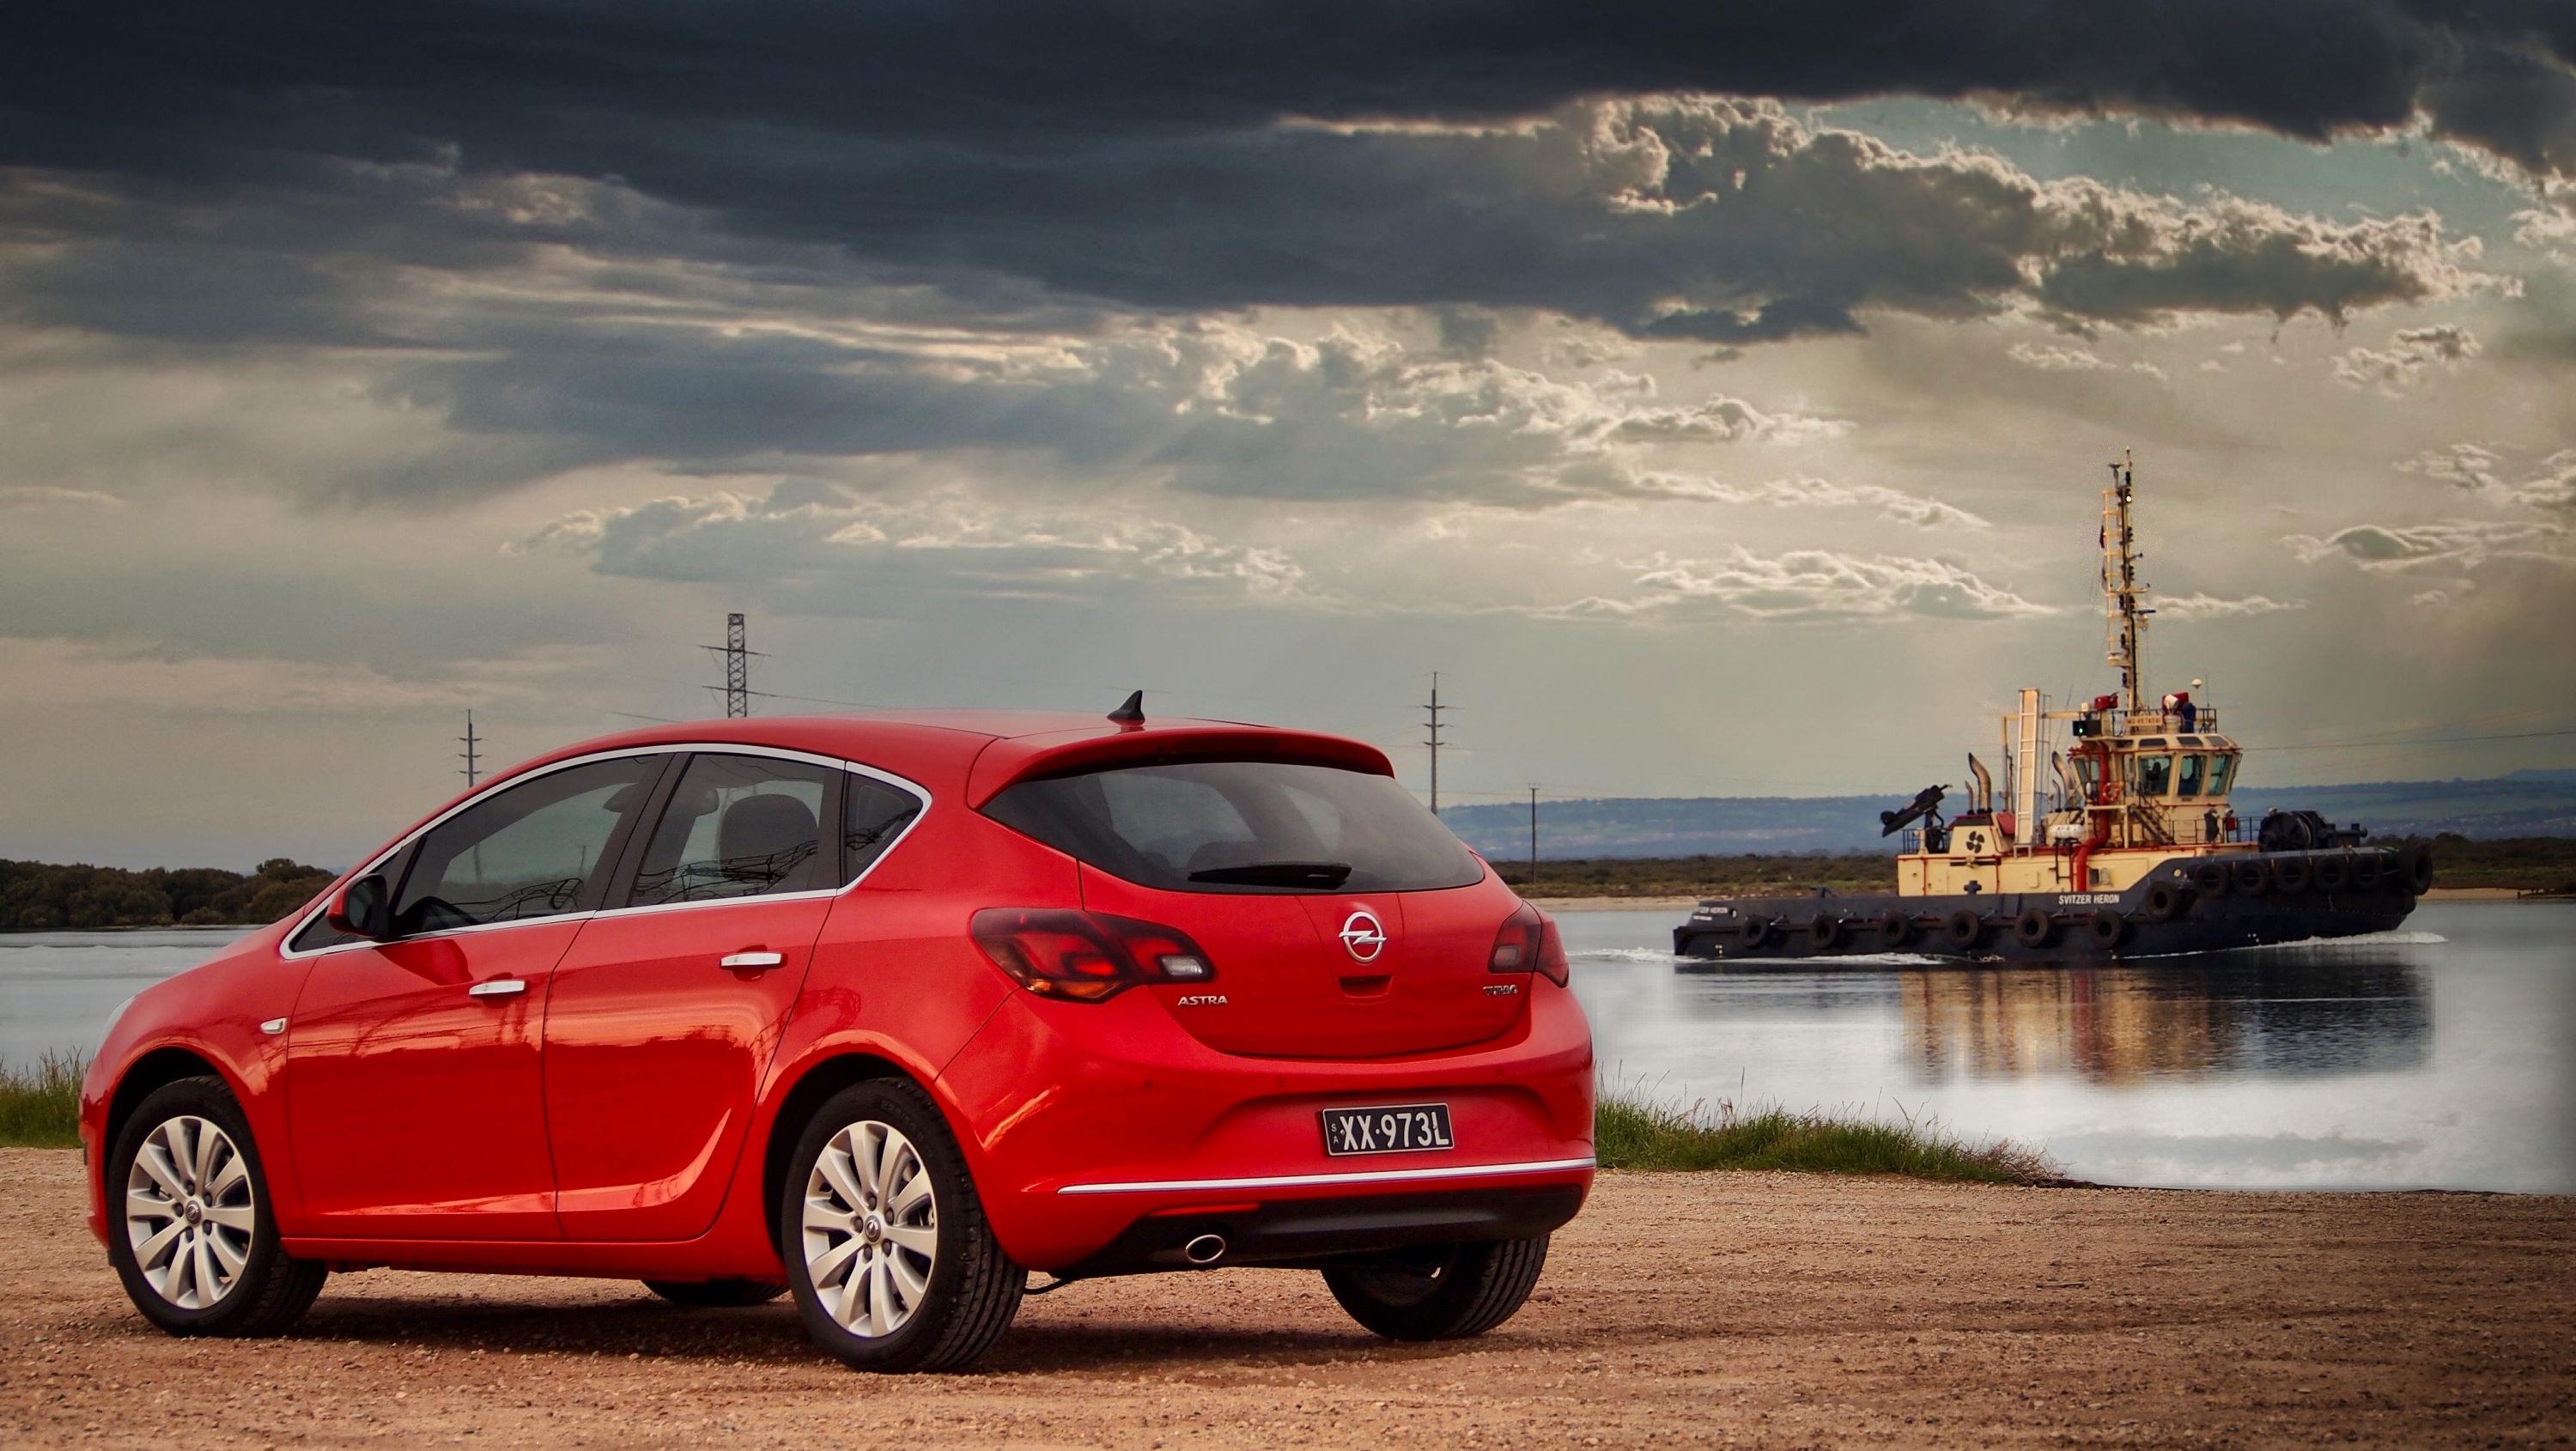 Review: Opel OPC range